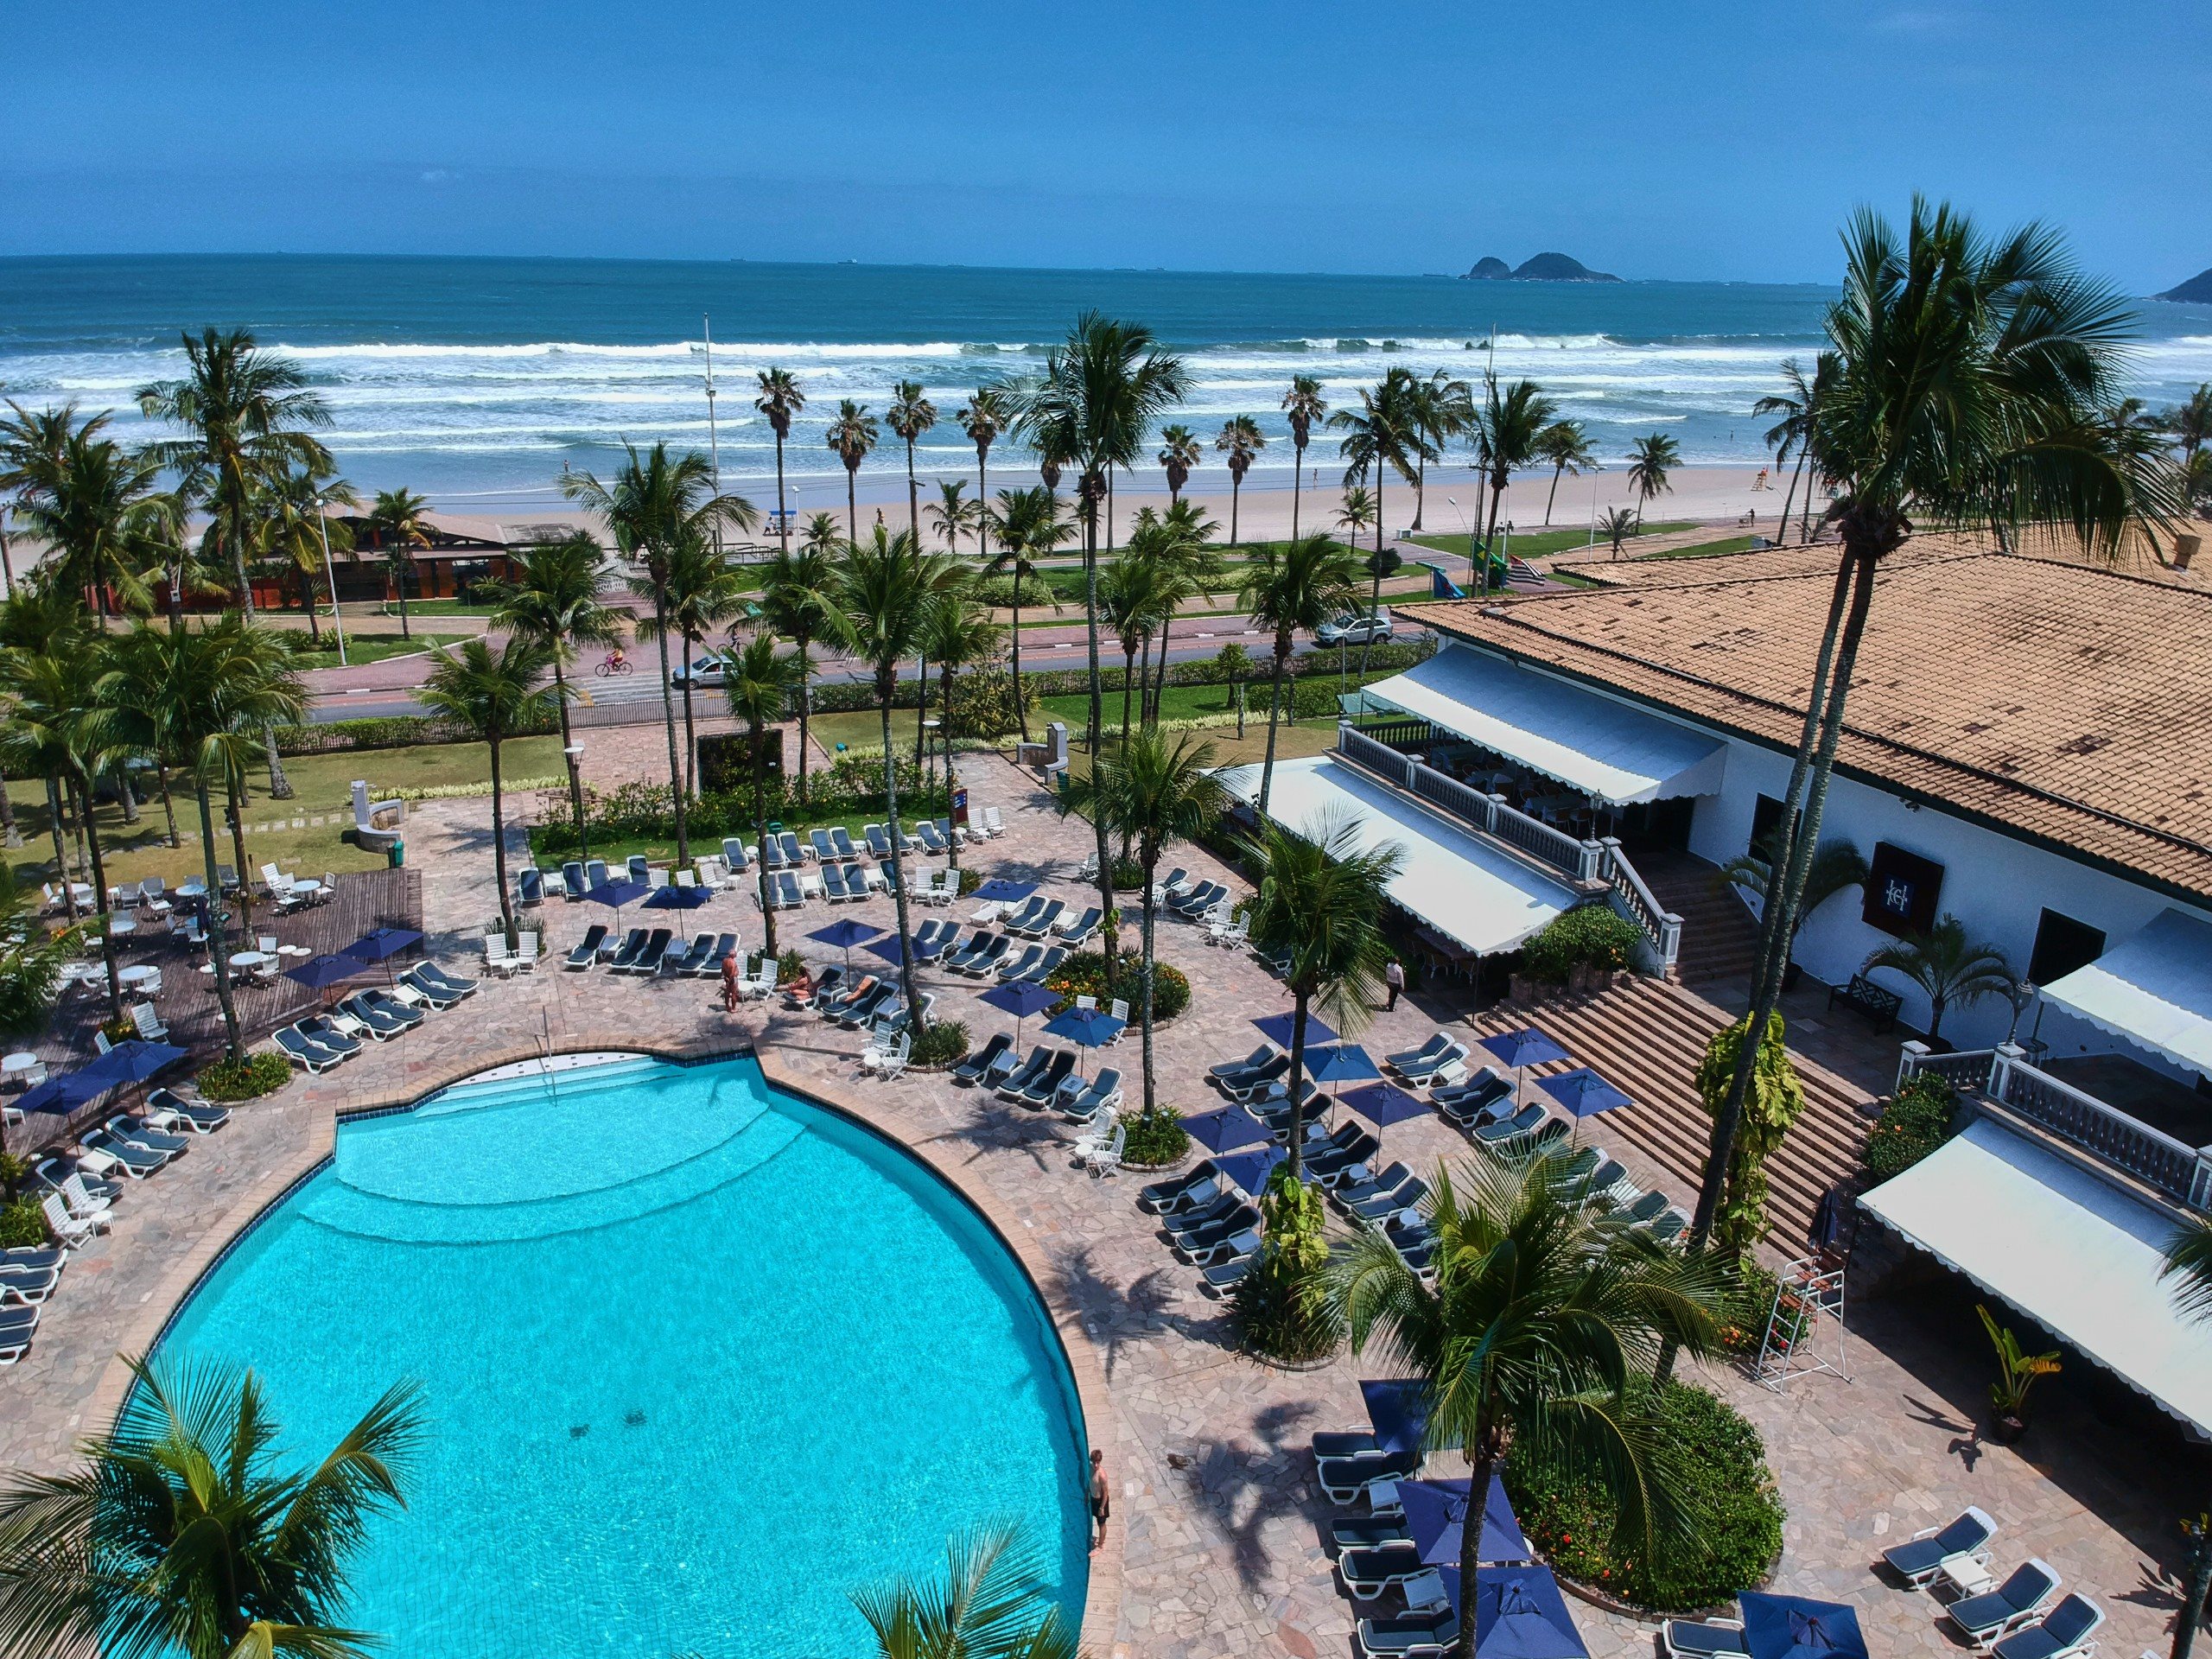 O resort conta com piscinas climatizadas, cinema, academia, quadras de tênis e mais